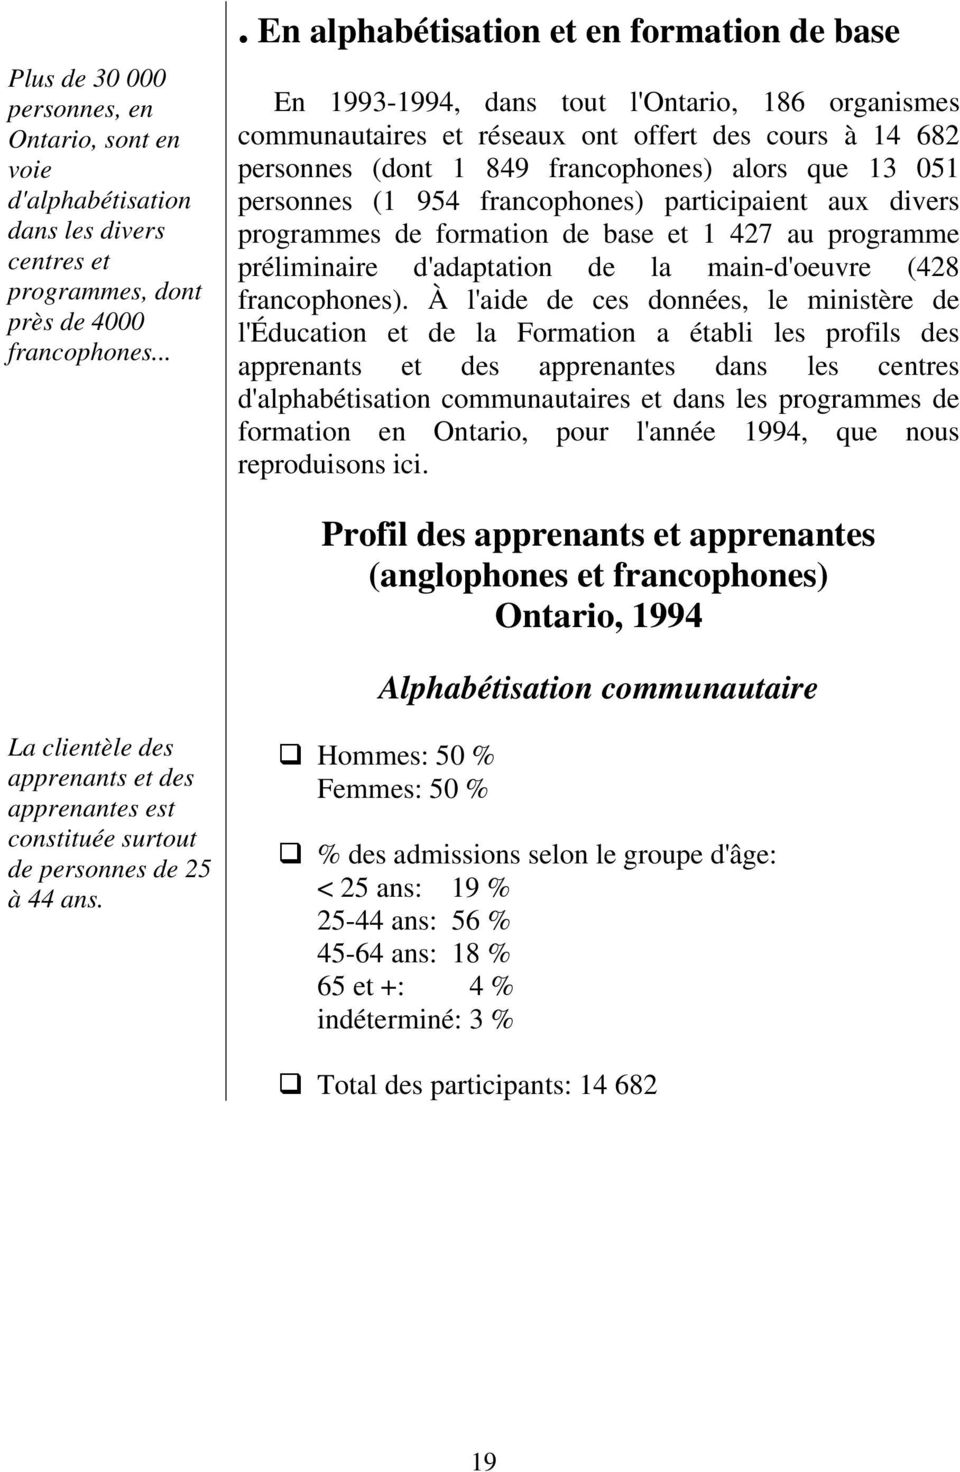 13 051 personnes (1 954 francophones) participaient aux divers programmes de formation de base et 1 427 au programme préliminaire d'adaptation de la main-d'oeuvre (428 francophones).